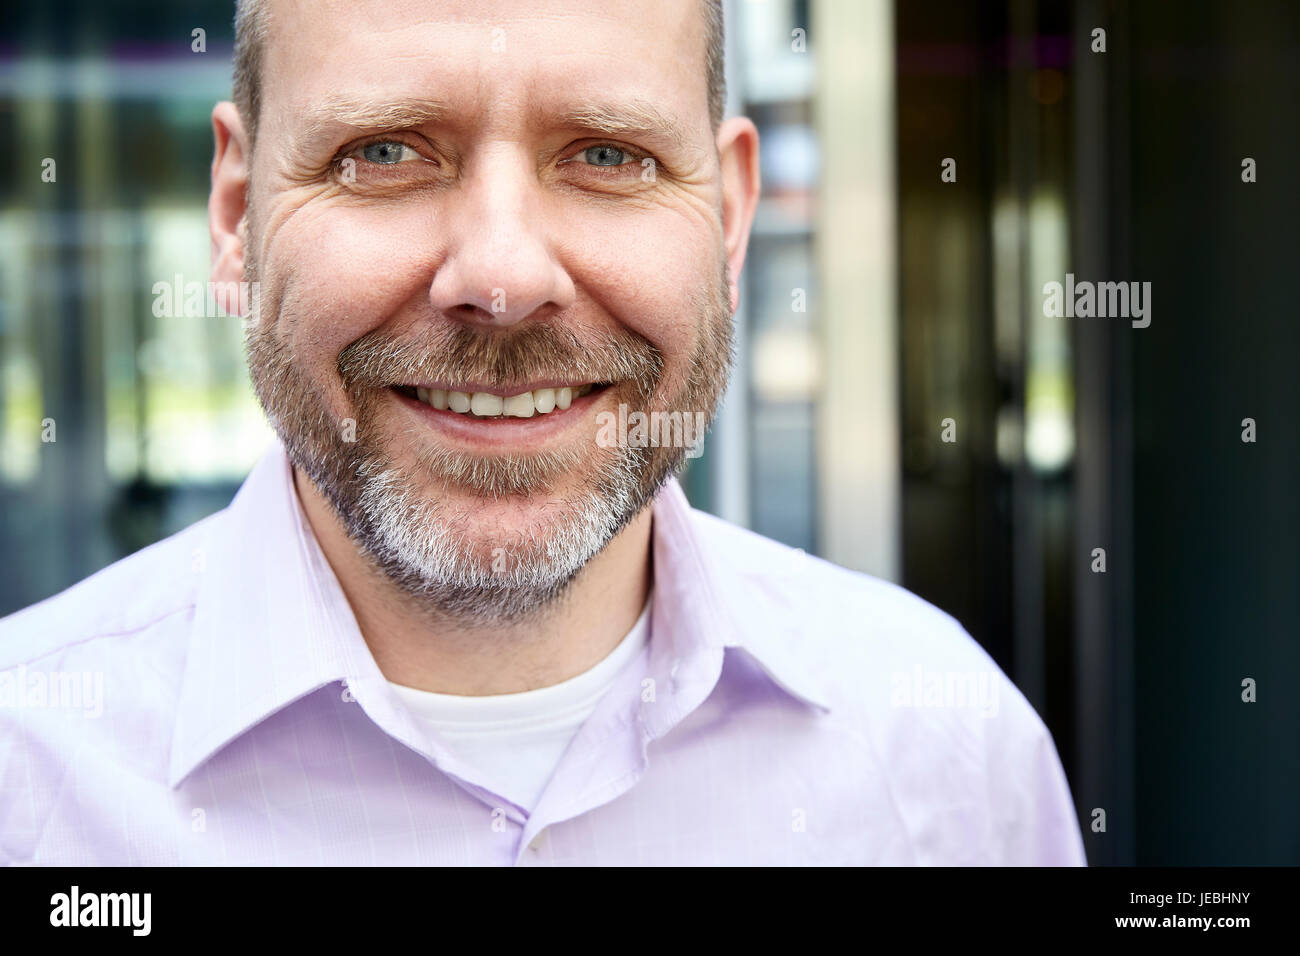 Real man smiling with beard, Close up portrait portrait. Il est debout en face de son bureau. Banque D'Images